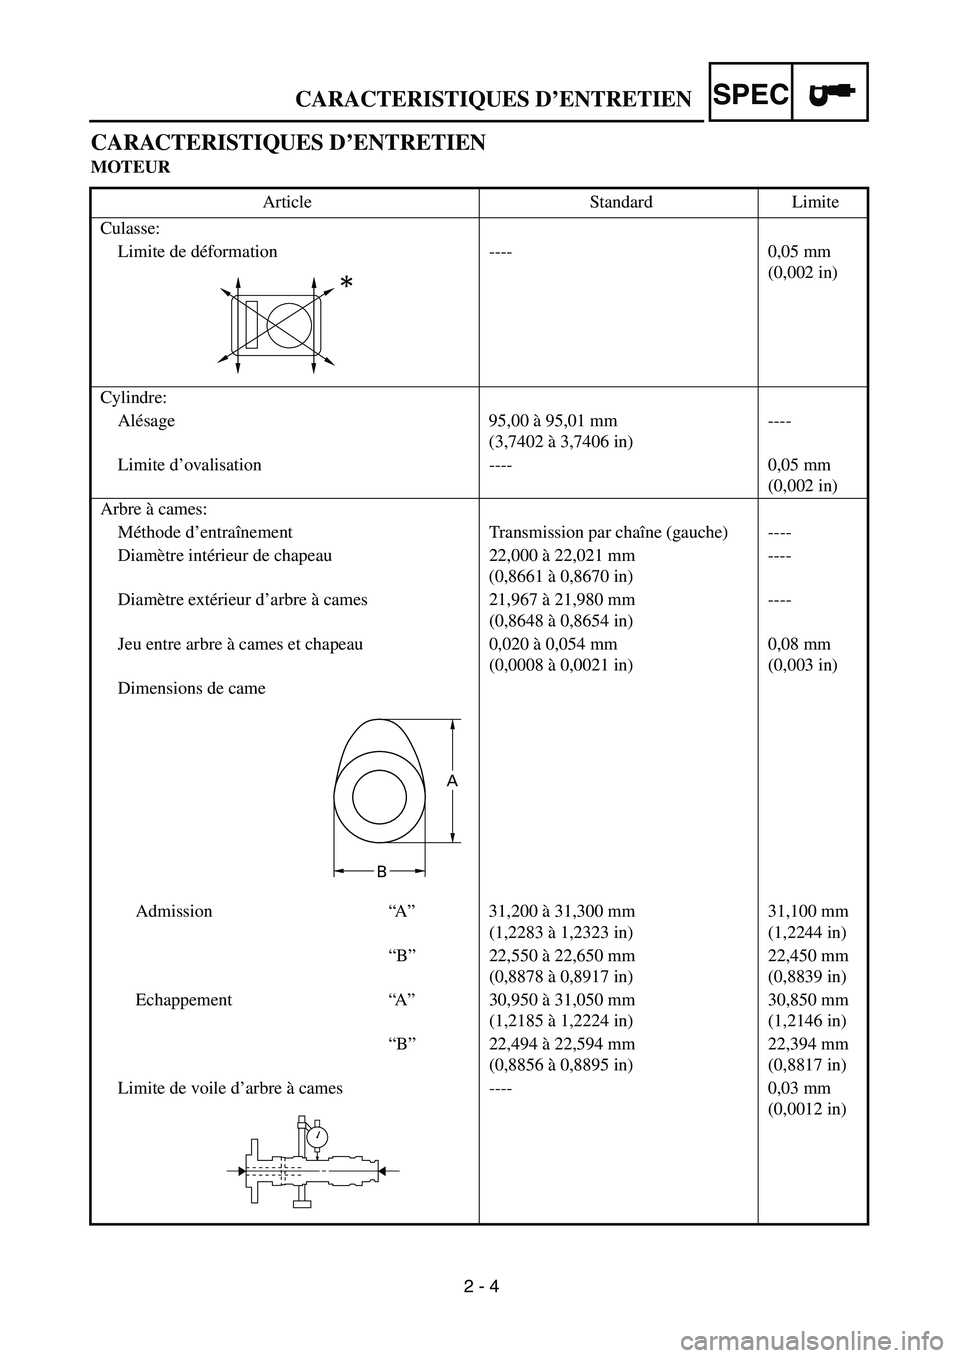 YAMAHA WR 450F 2004  Manuale de Empleo (in Spanish)  
2 - 4 
CARACTERISTIQUES D’ENTRETIEN
SPEC
 
CARACTERISTIQUES D’ENTRETIEN 
MOTEUR 
Article Standard Limite
Culasse:
Limite de déformation ---- 0,05 mm 
(0,002 in)
Cylindre:
Alésage 95,00 à 95,0